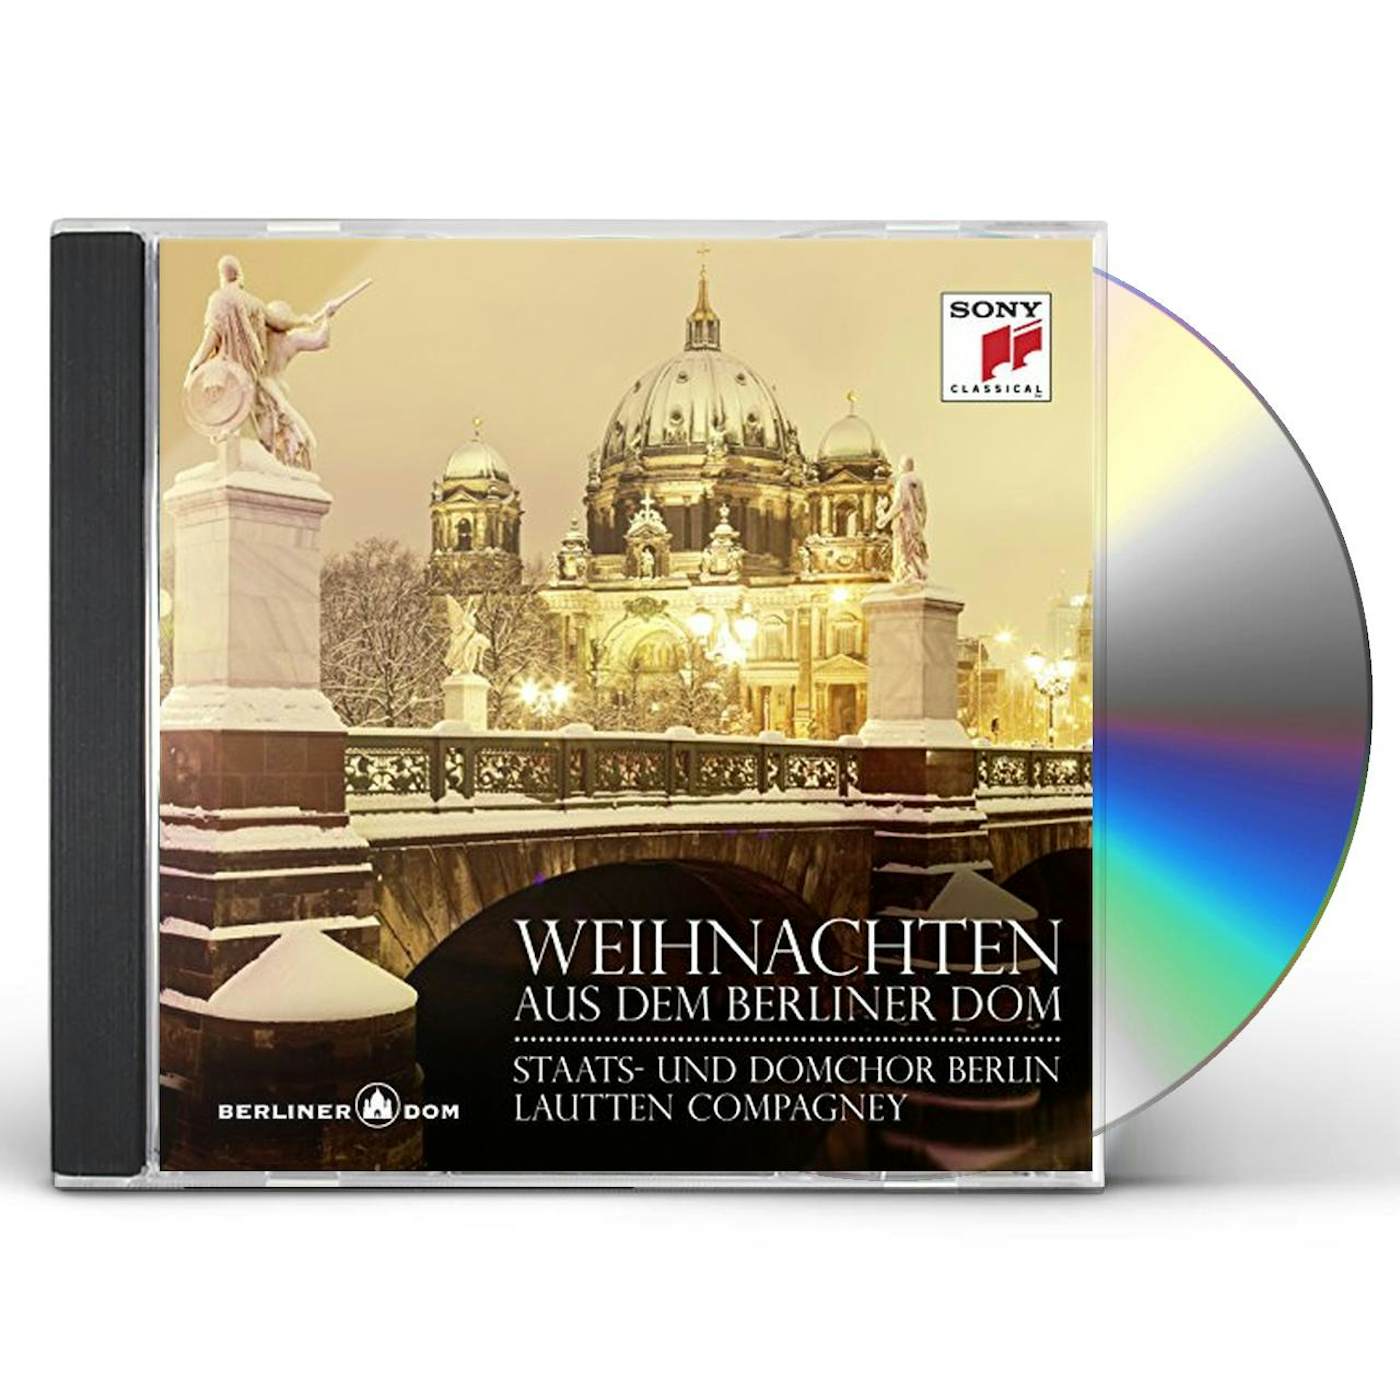 Lautten Compagney WEIHNACHTEN AUS DEM BERLINER DOM CD